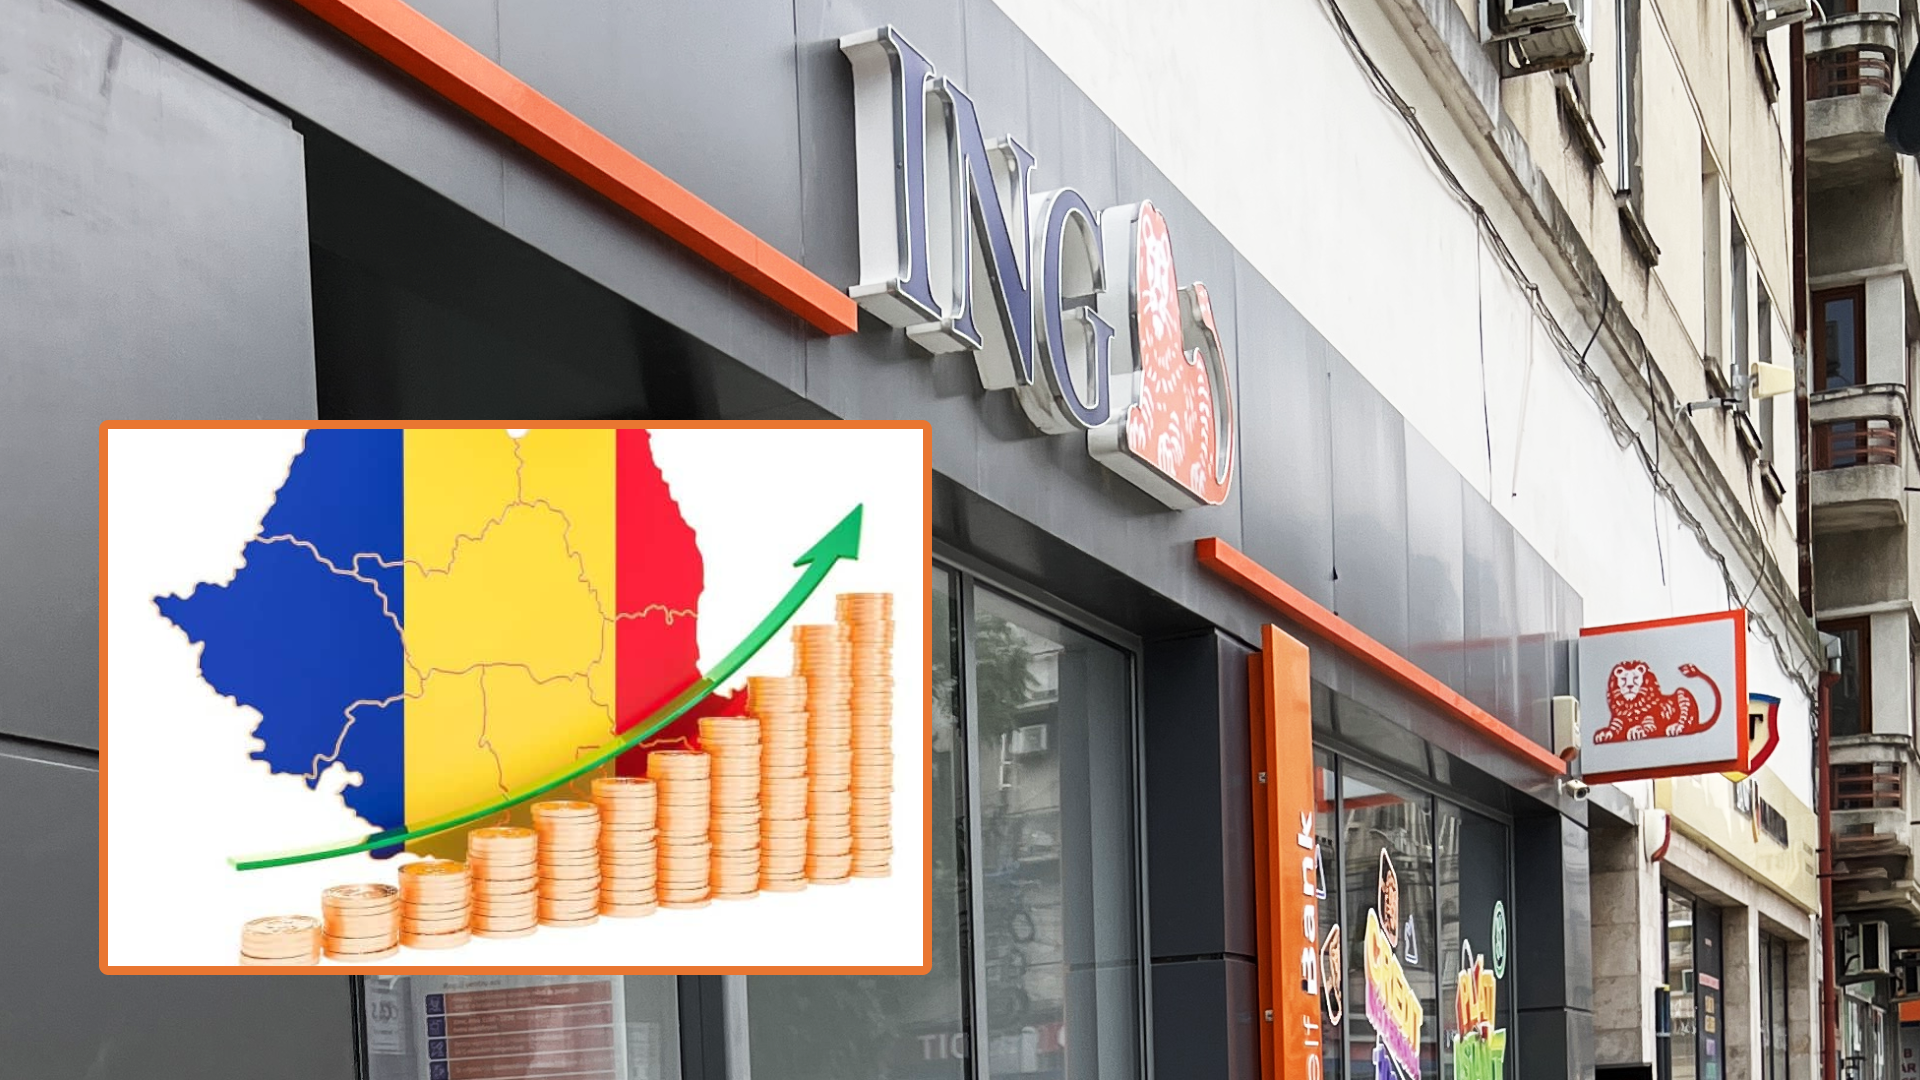 Prognoză îngrijorătoare de la ING! Economia României încetinește mai rapid decât așteptat